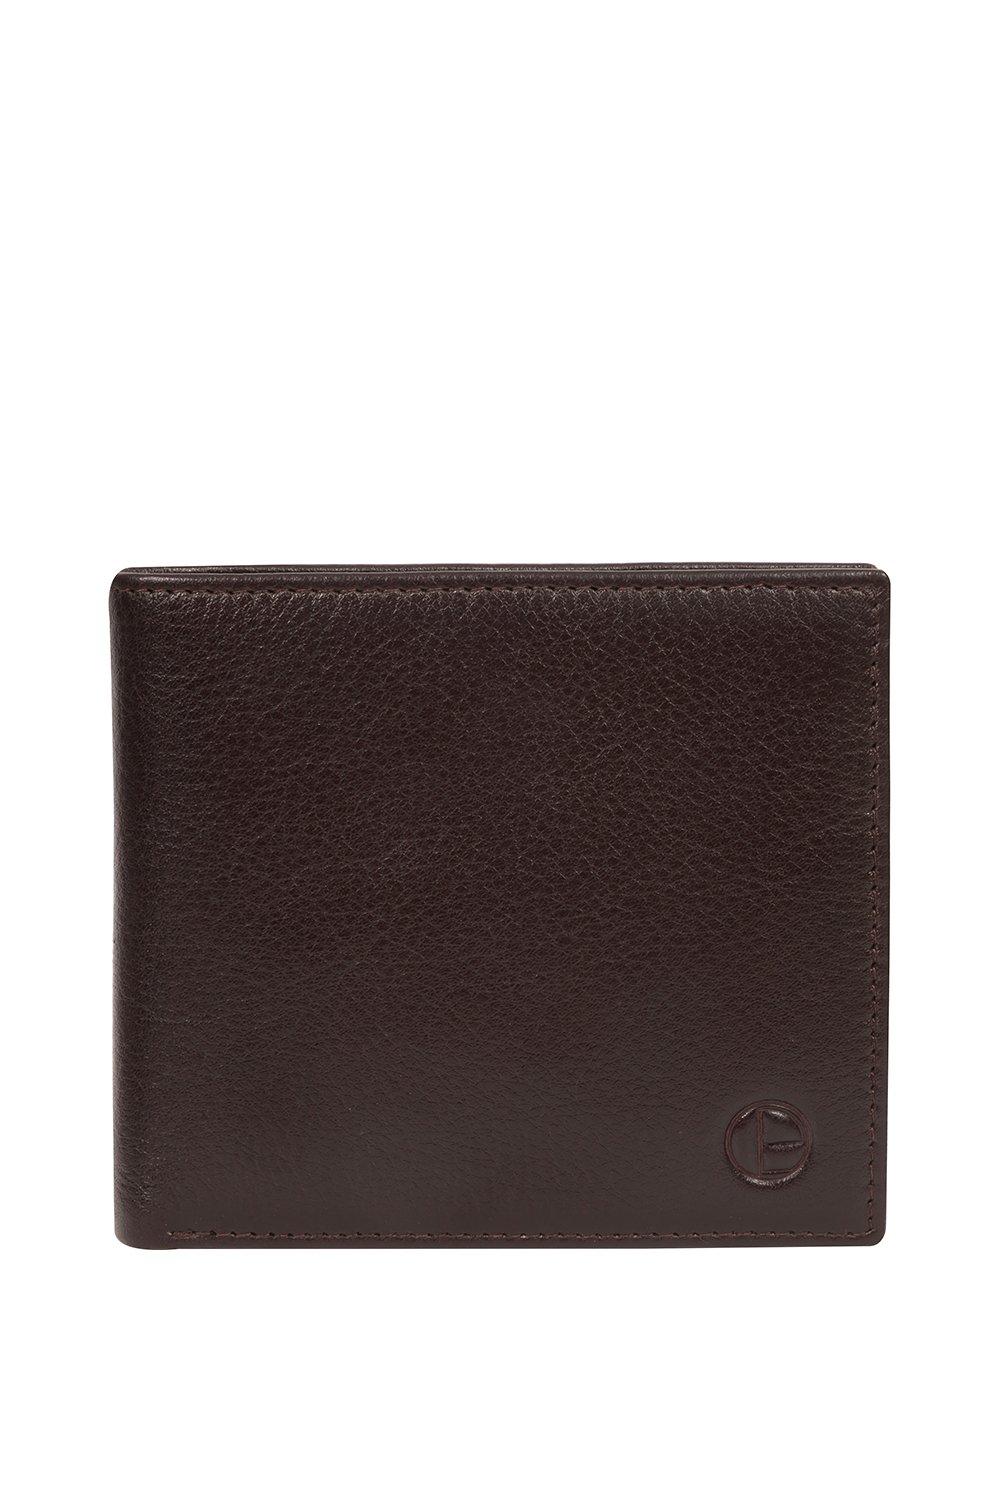 Кожаный кошелек Викинг Pure Luxuries London, коричневый